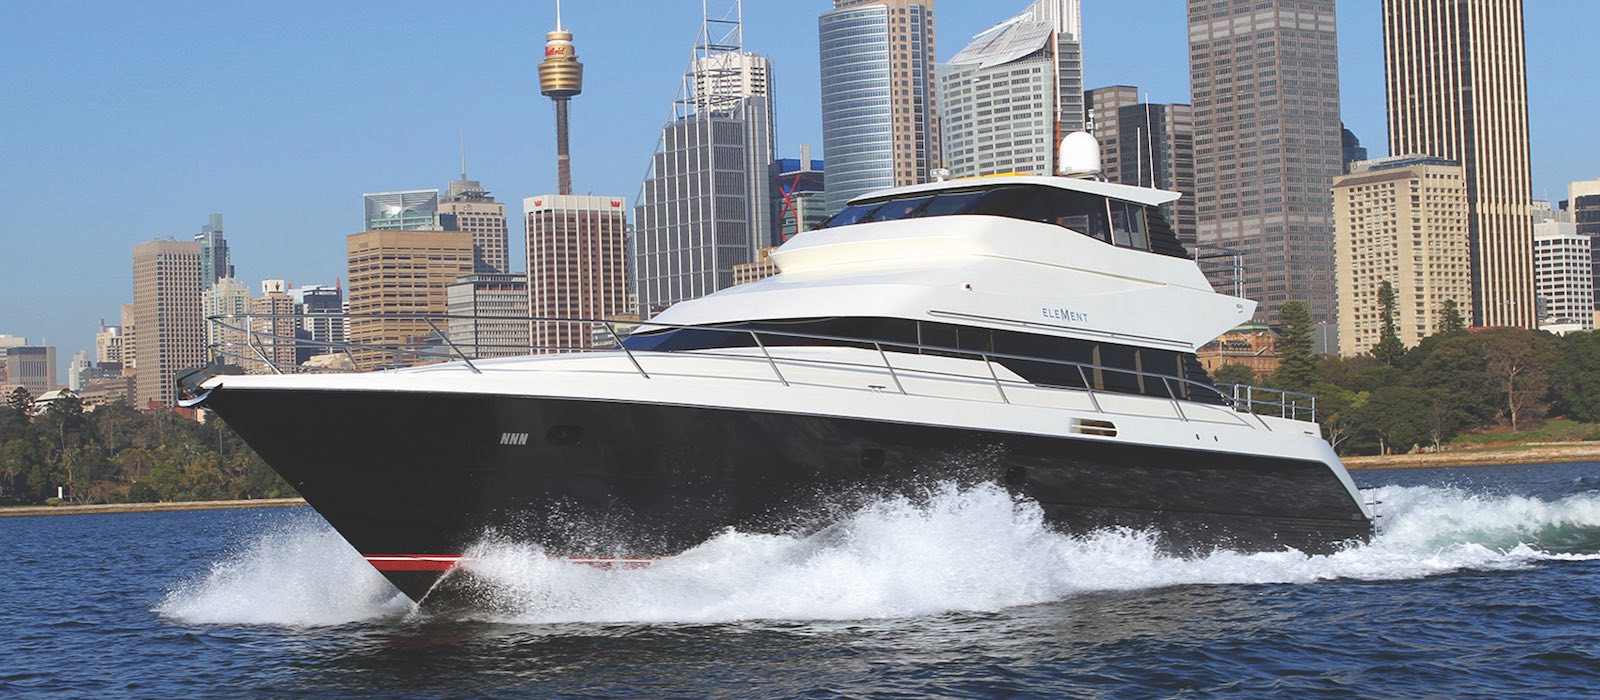 Element luxury boat hire cruising with Sydney cityscape background